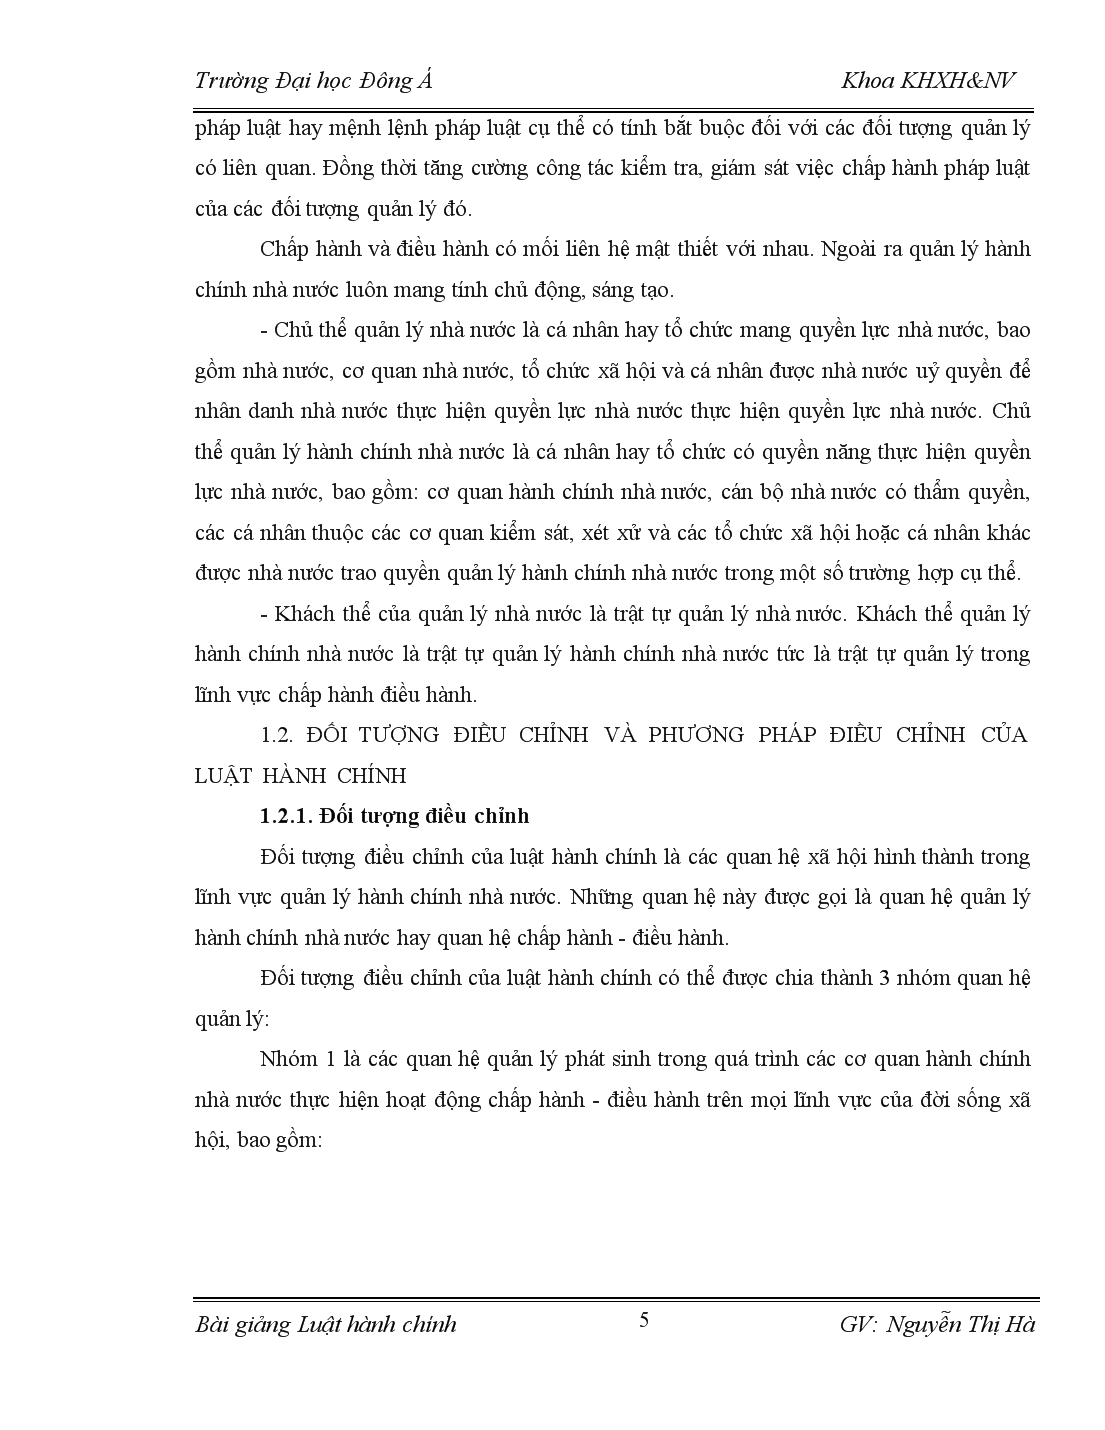 Bài giảng về luật hành chính Việt Nam trang 5